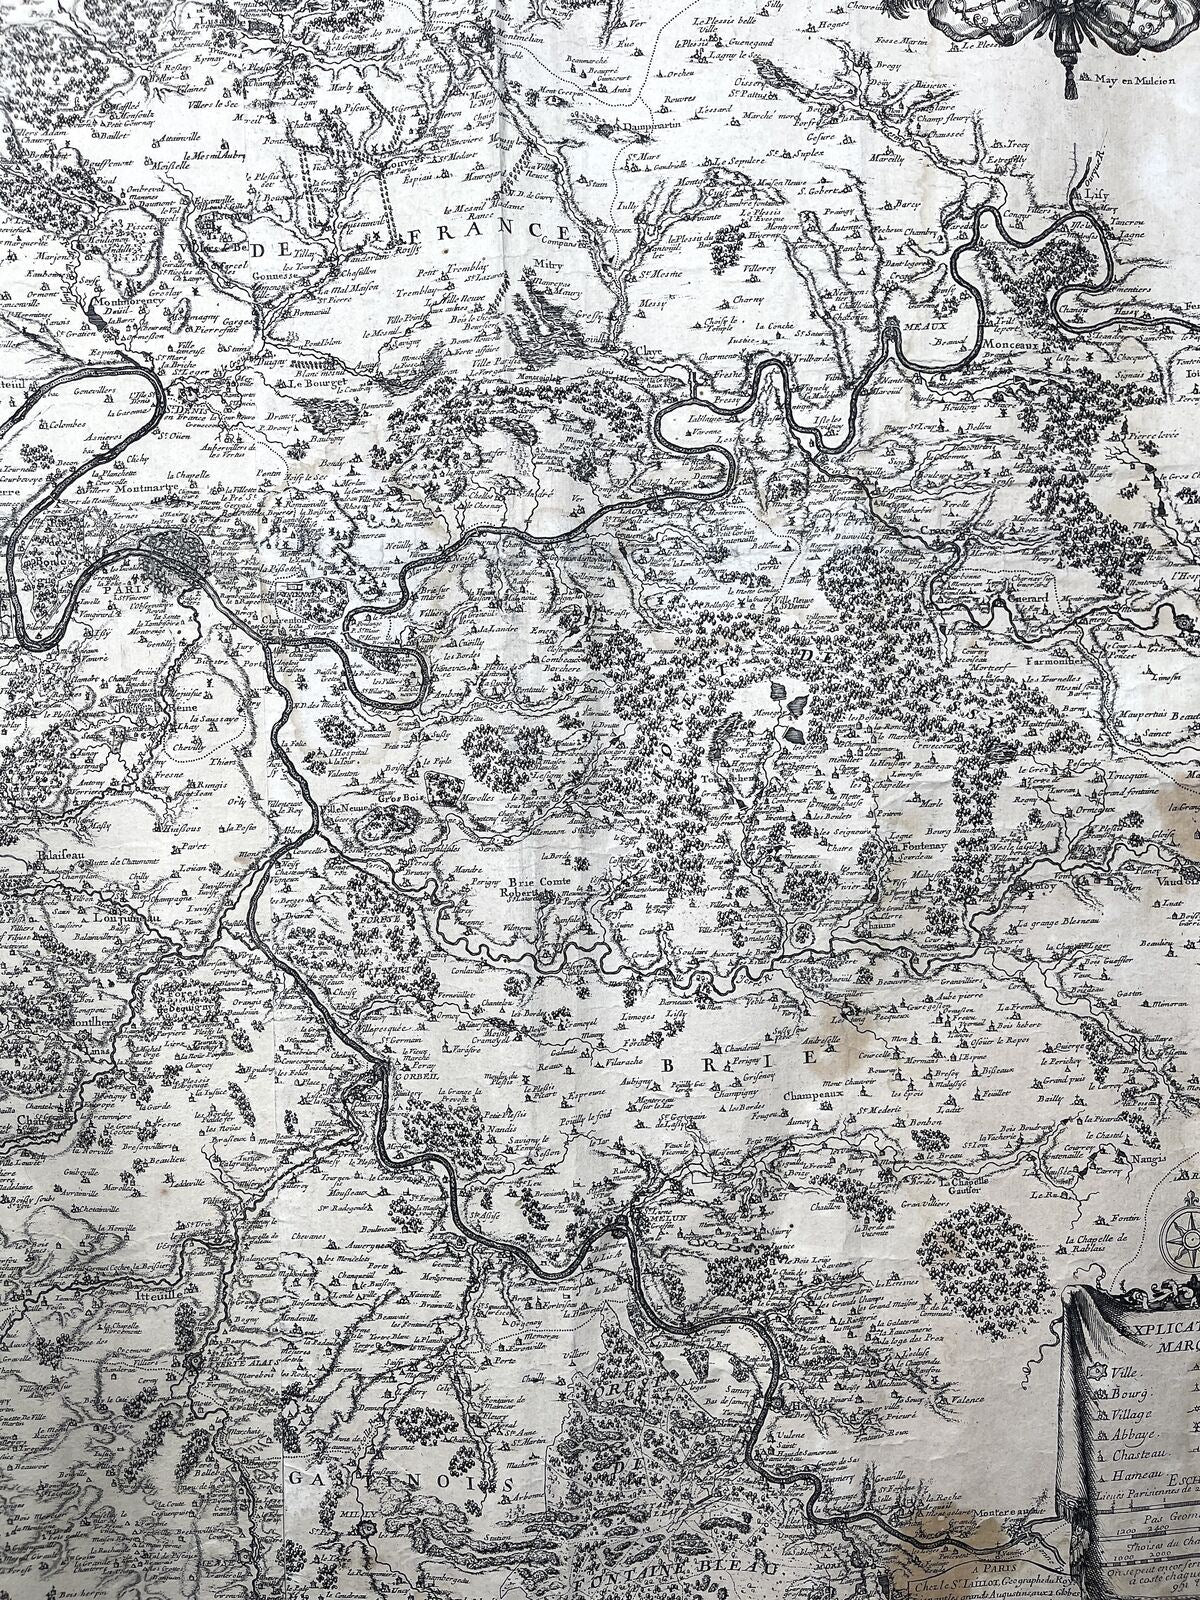 France, Paris Wall Map 1706 Jaillot, Alexis-Hubert - Carte environs de Paris.. - Dahlströms Fine Art